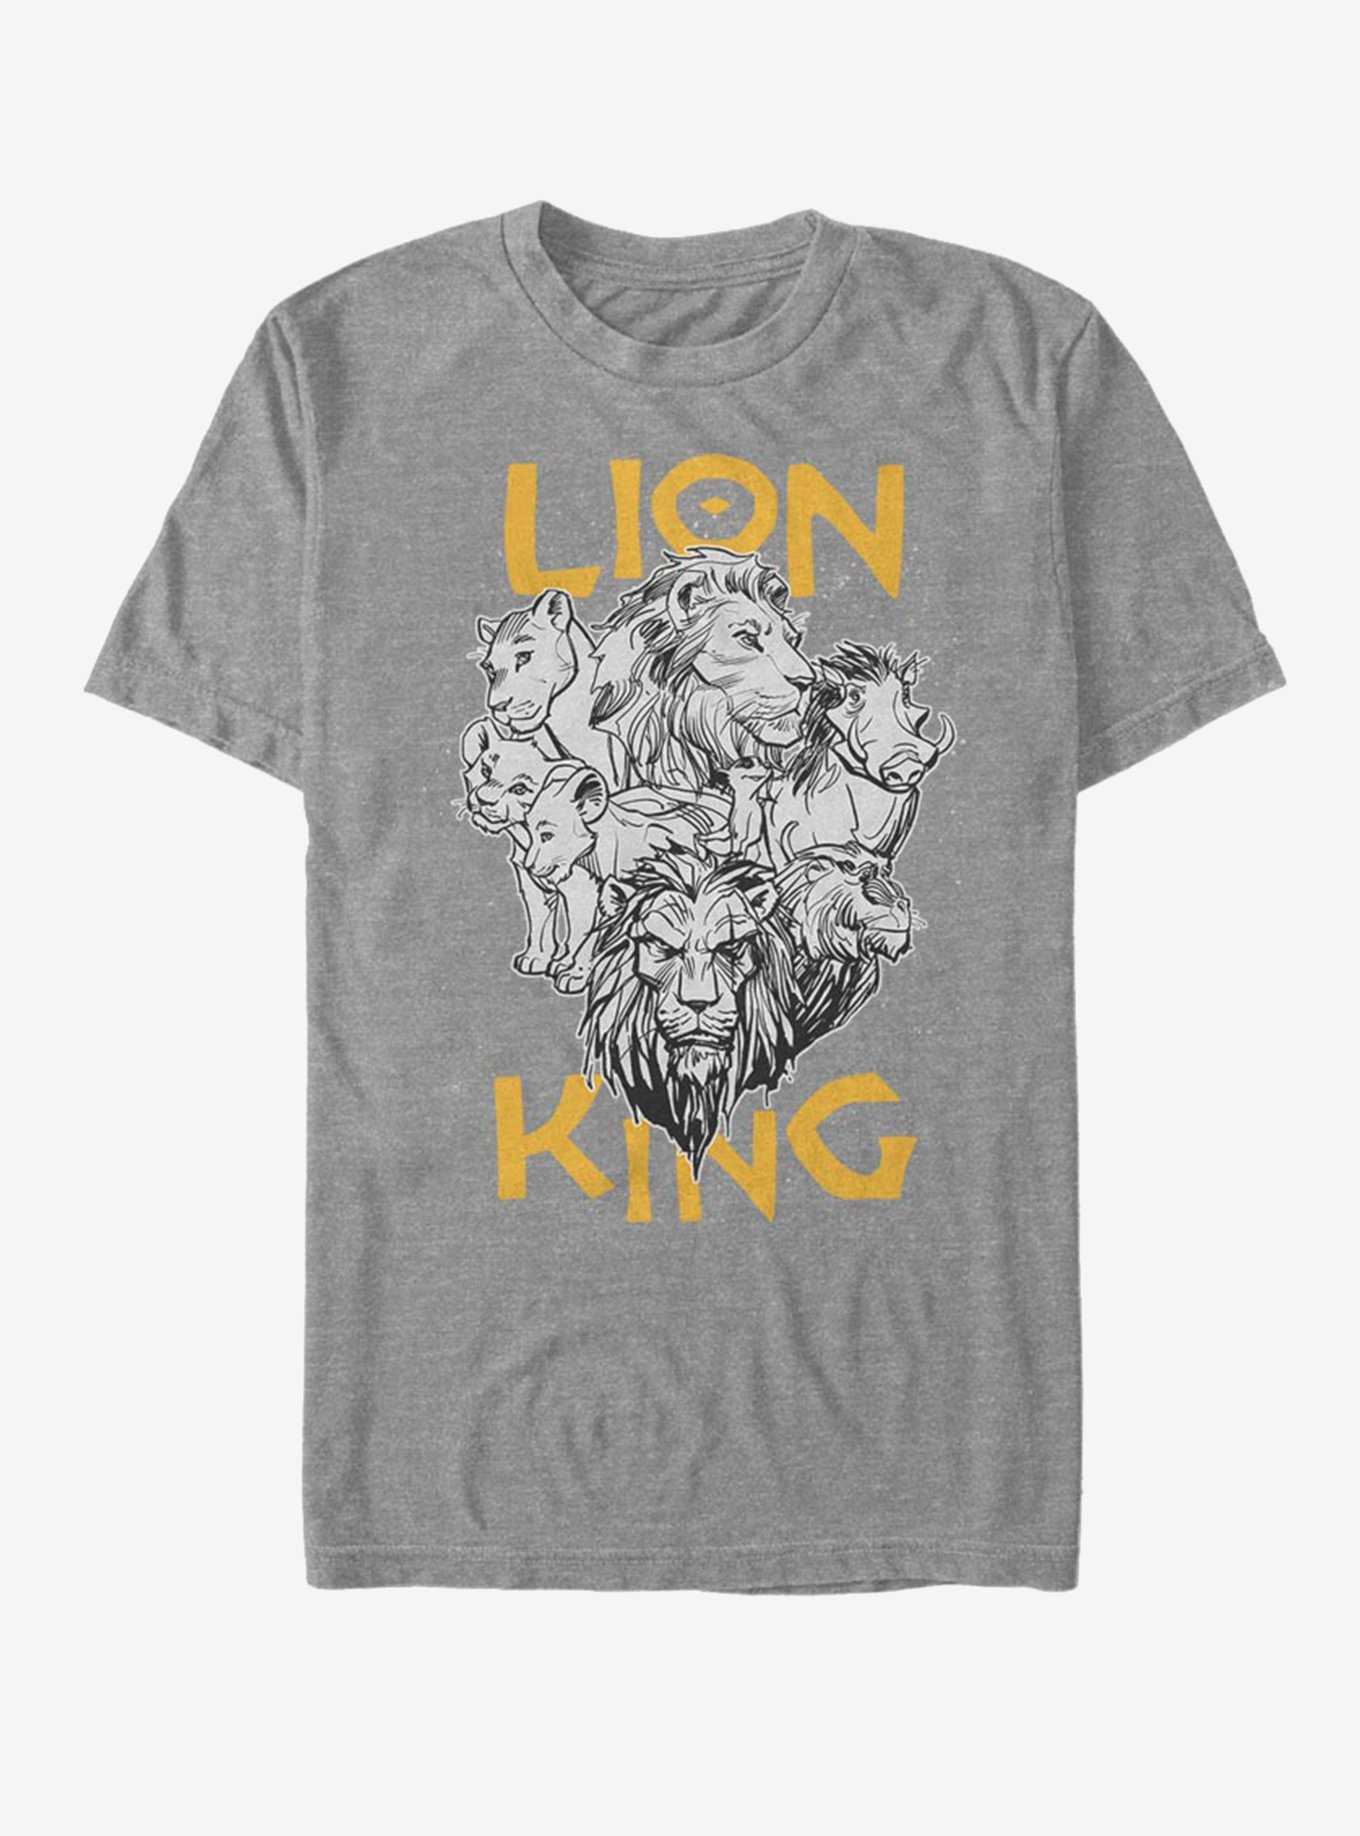 Disney The Lion King 2019 Cast Photo T-Shirt, , hi-res